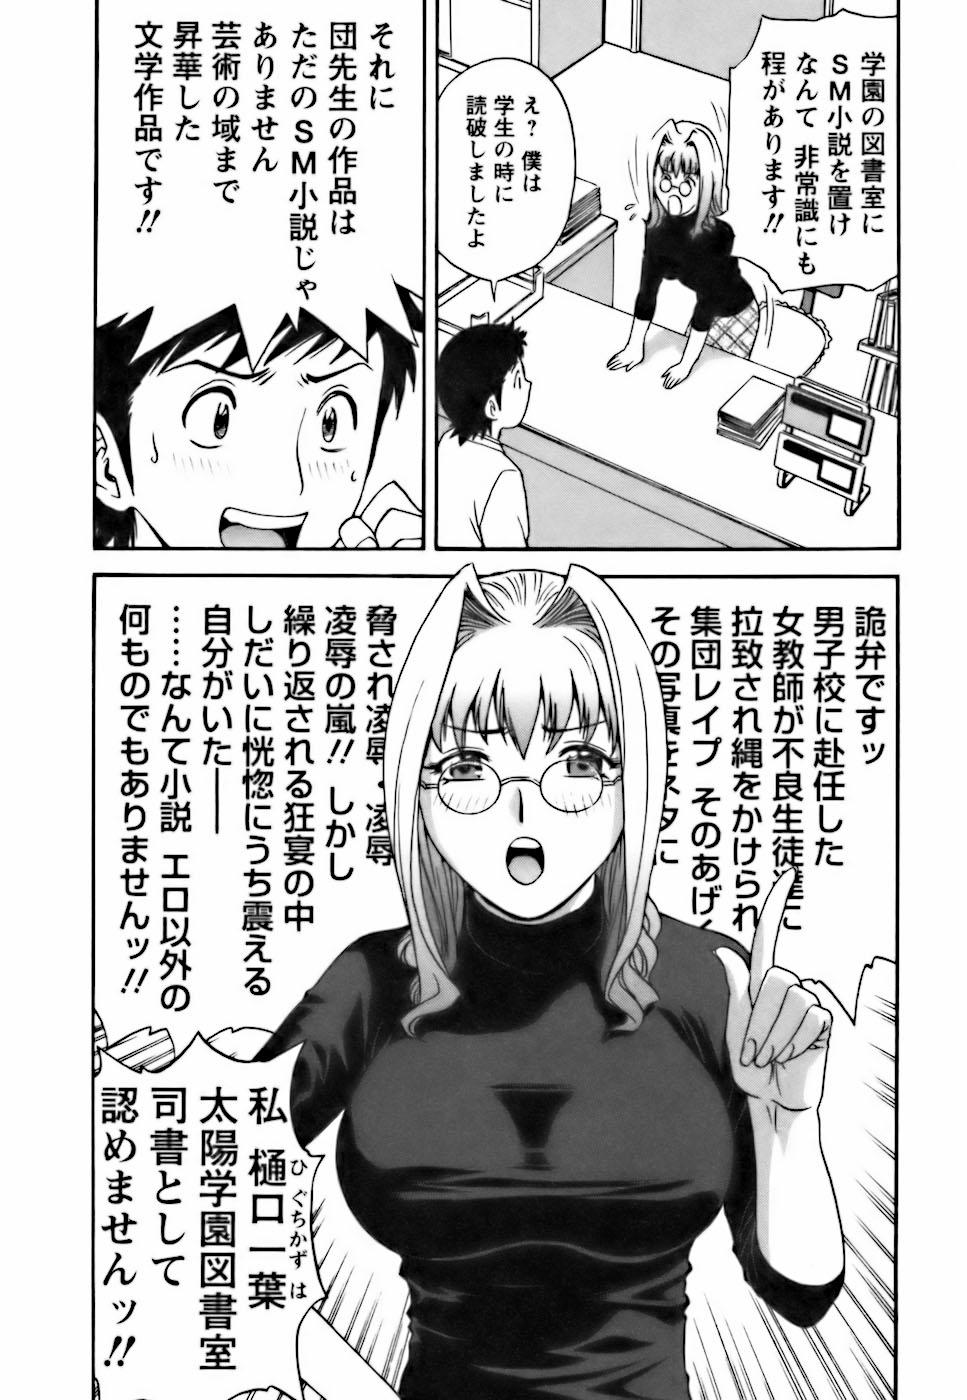 [Hidemaru] Mo-Retsu! Boin Sensei (Boing Boing Teacher) Vol.3 91